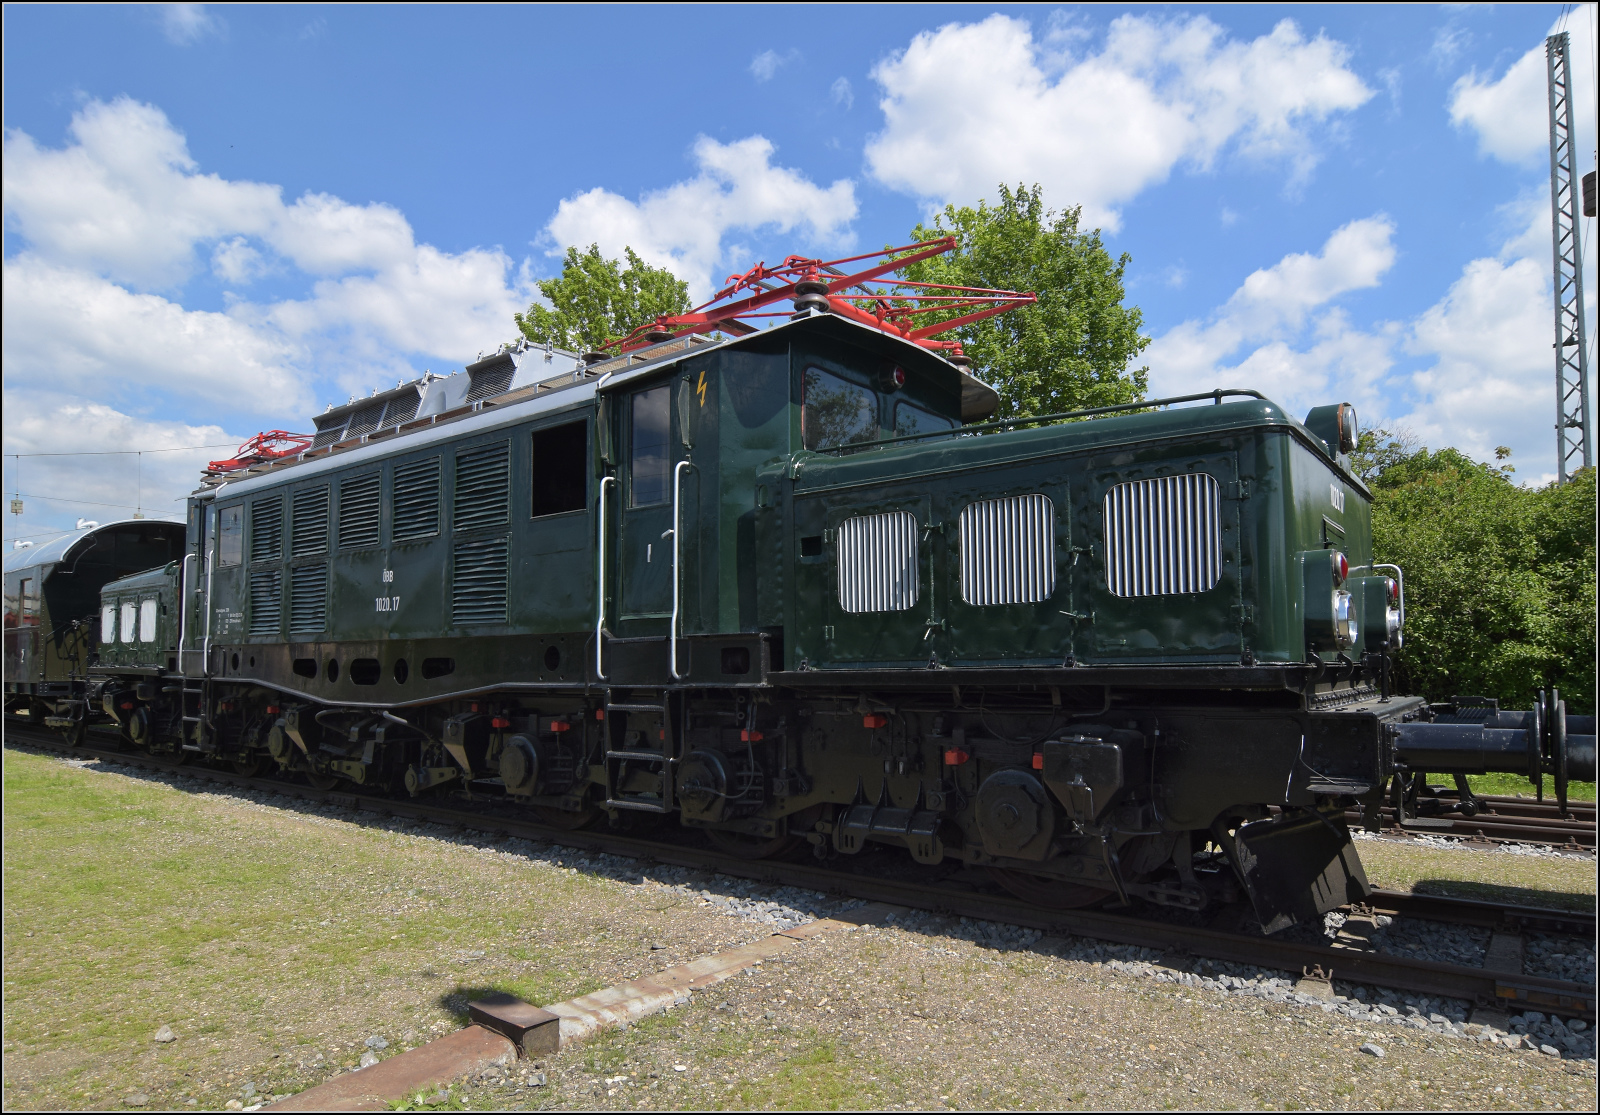 175 Jahre Eisenbahn in Nördlingen / 55 Jahre Bayrisches Eisenbahnmuseum.

194 1123 alias 1020 012 wurde von den ÖBB modernisiert und wurde mittlerweile gewaltig aufgehübscht. Mai 2024.